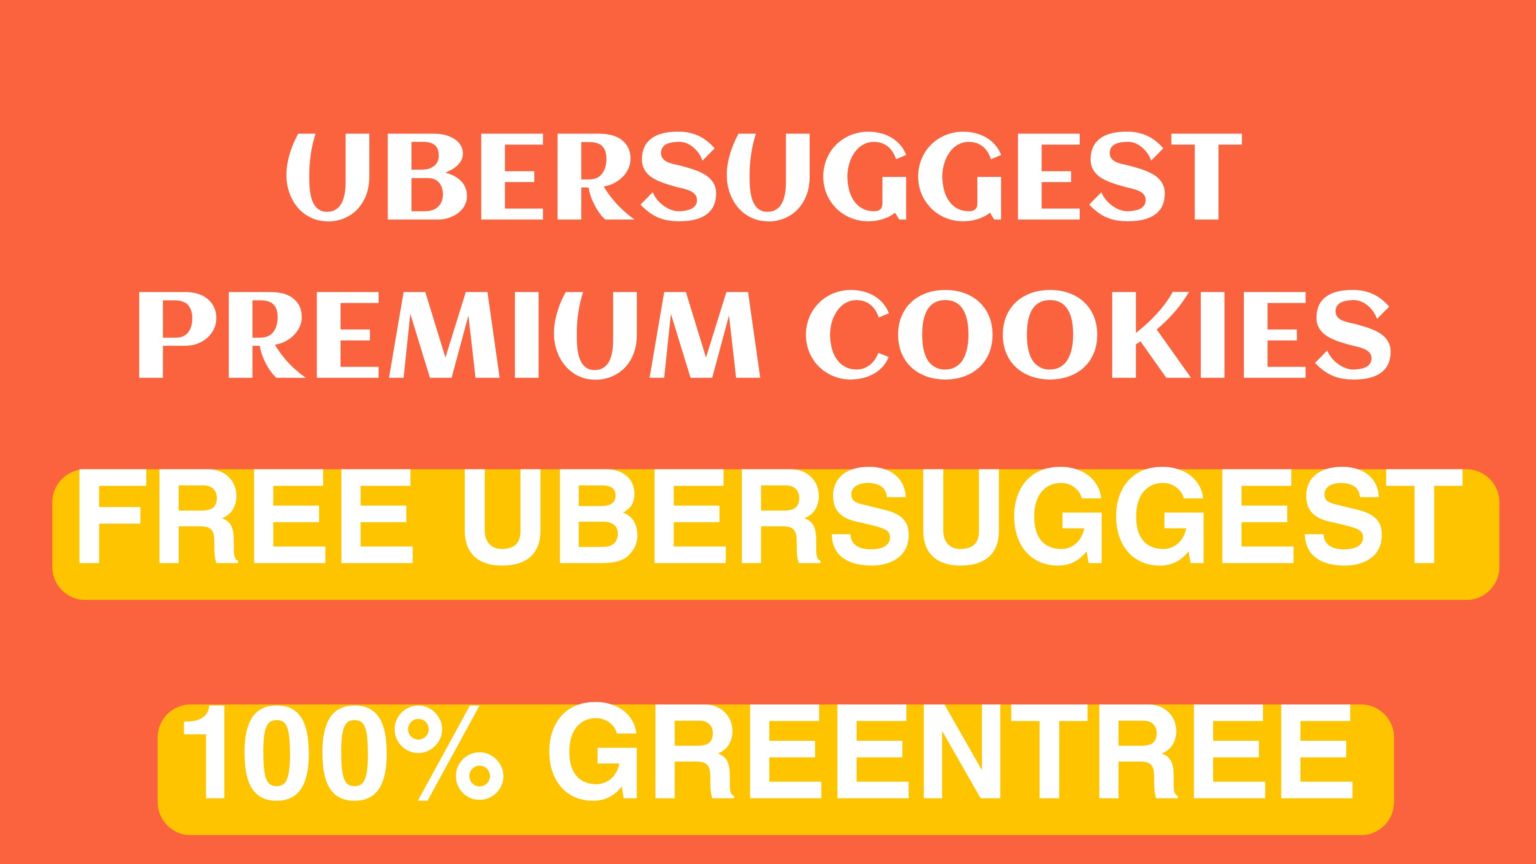 Ubersuggest Premium Free তে ব্যবহার করার উপায় ১০০%